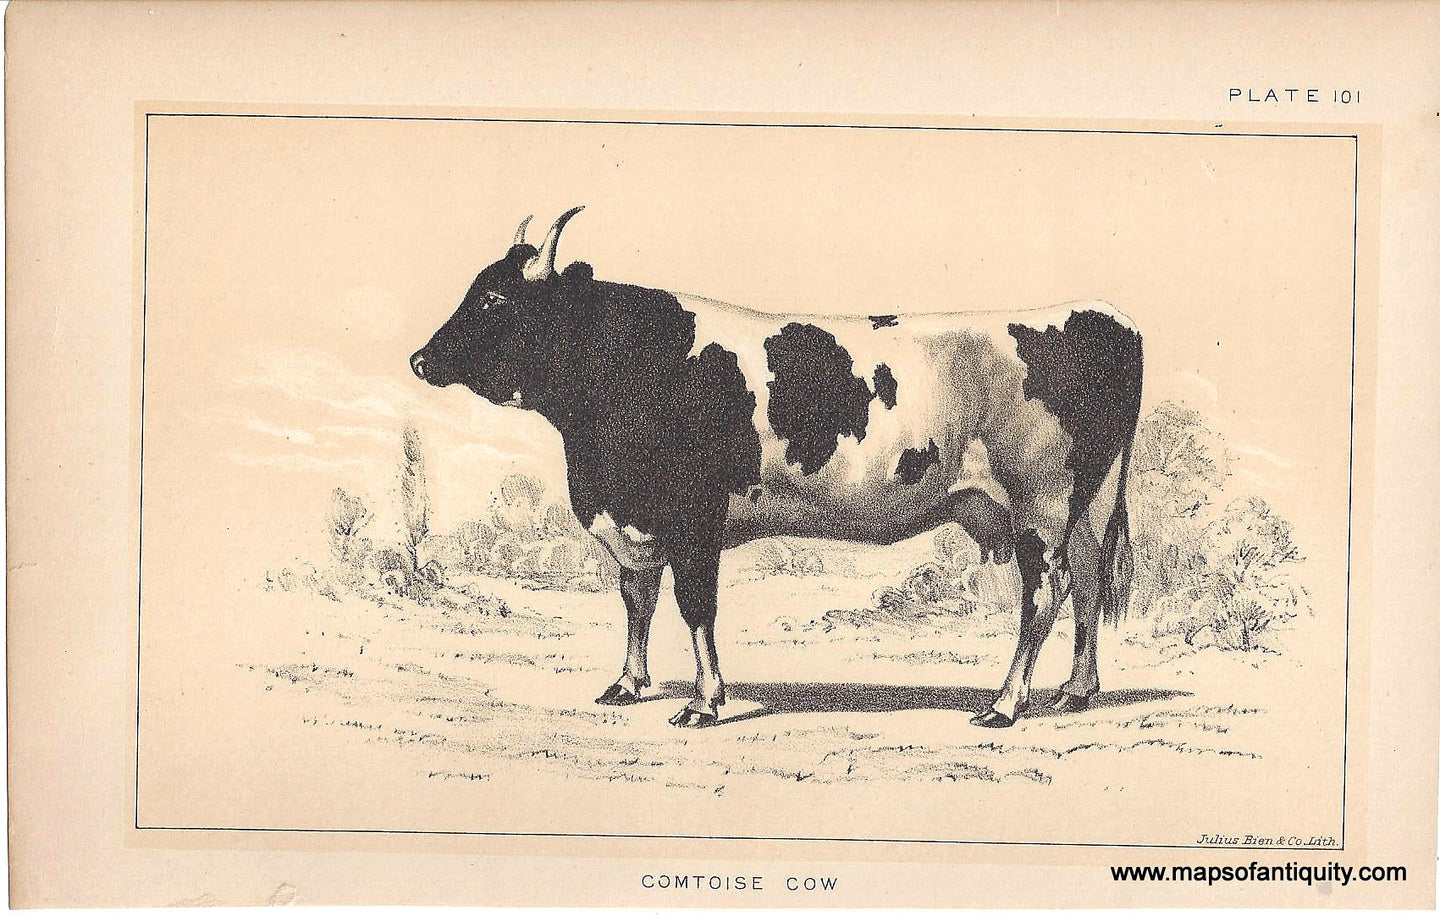 Genuine-Antique-Print-Comtoise-Cow-1888-Julius-Bien-Co-Maps-Of-Antiquity